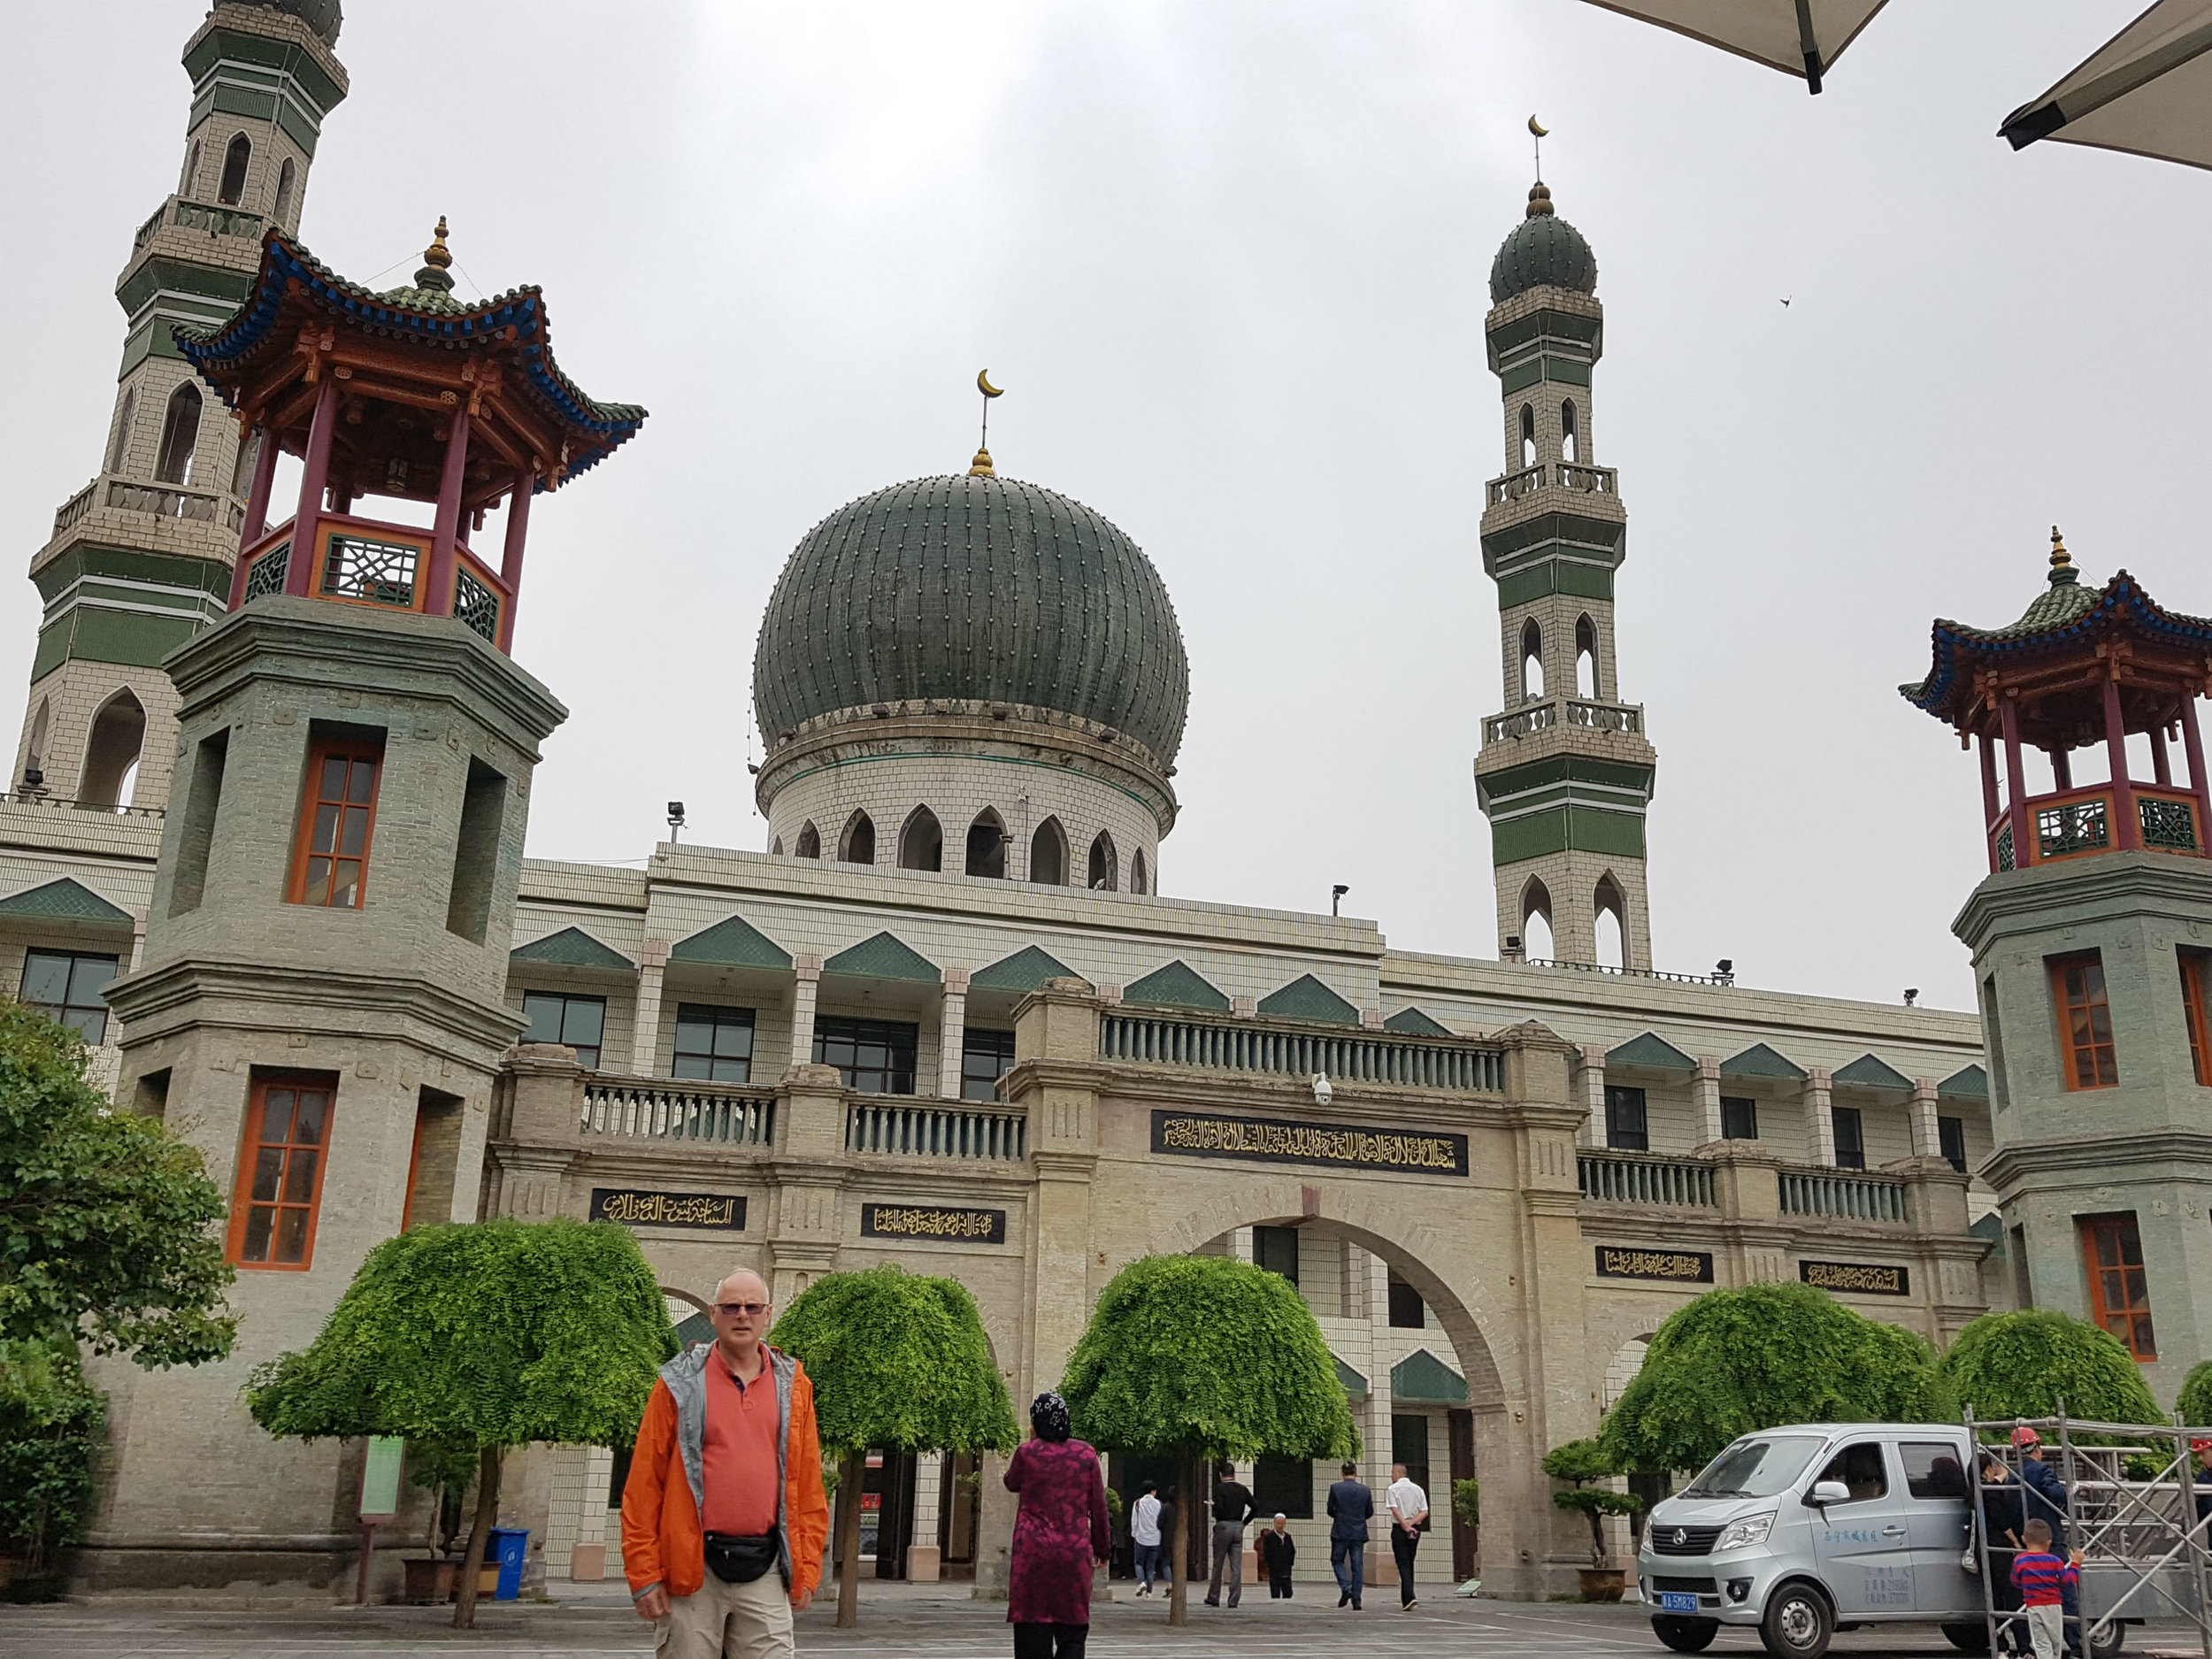 Dongguan Grand Mosque in Xining